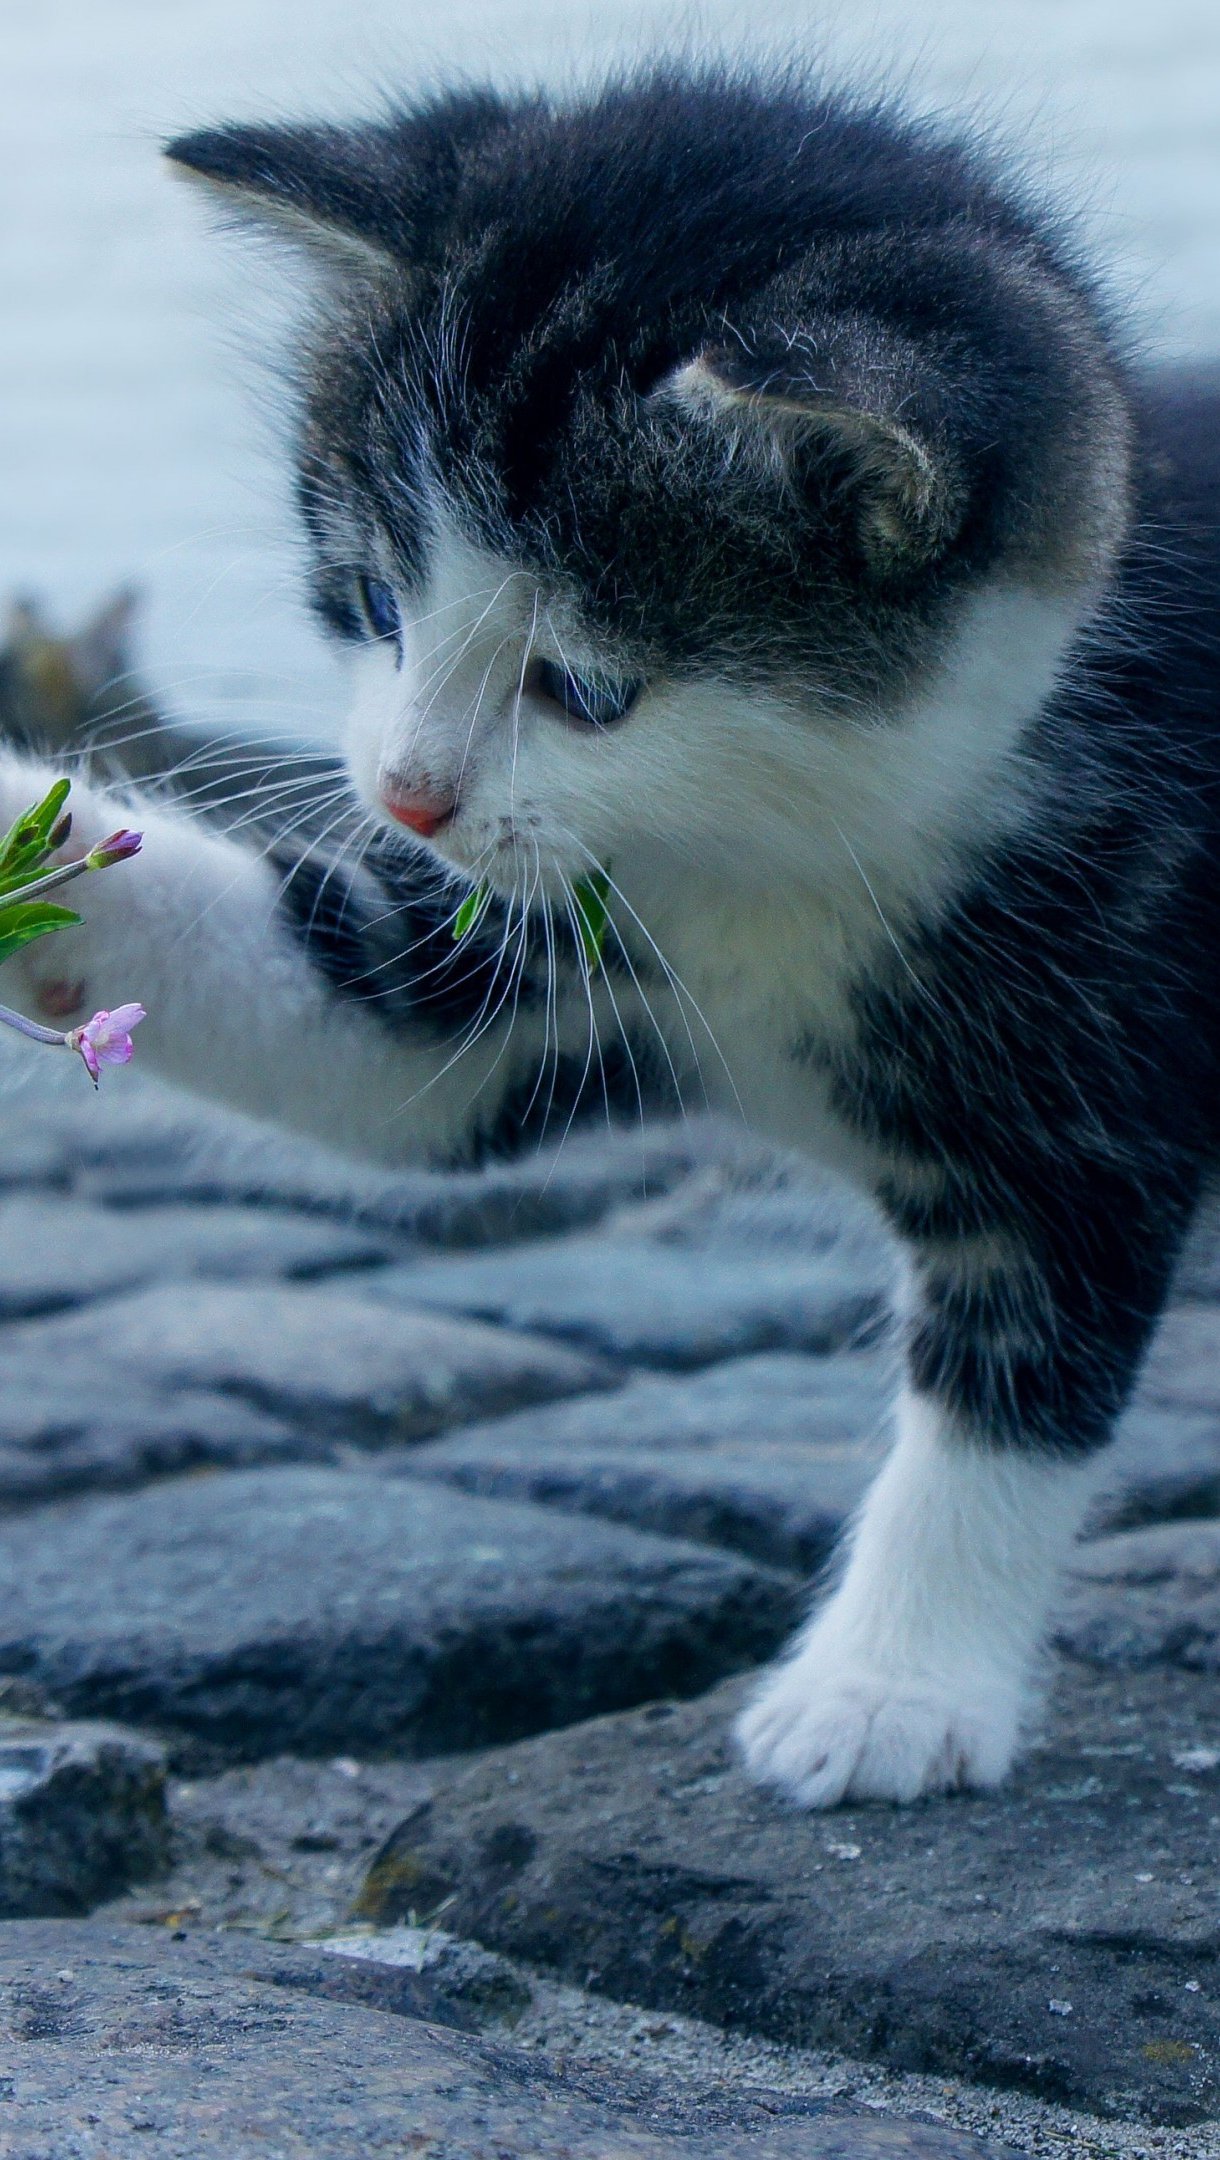 Fondos de pantalla Gato jugando con una flor Vertical